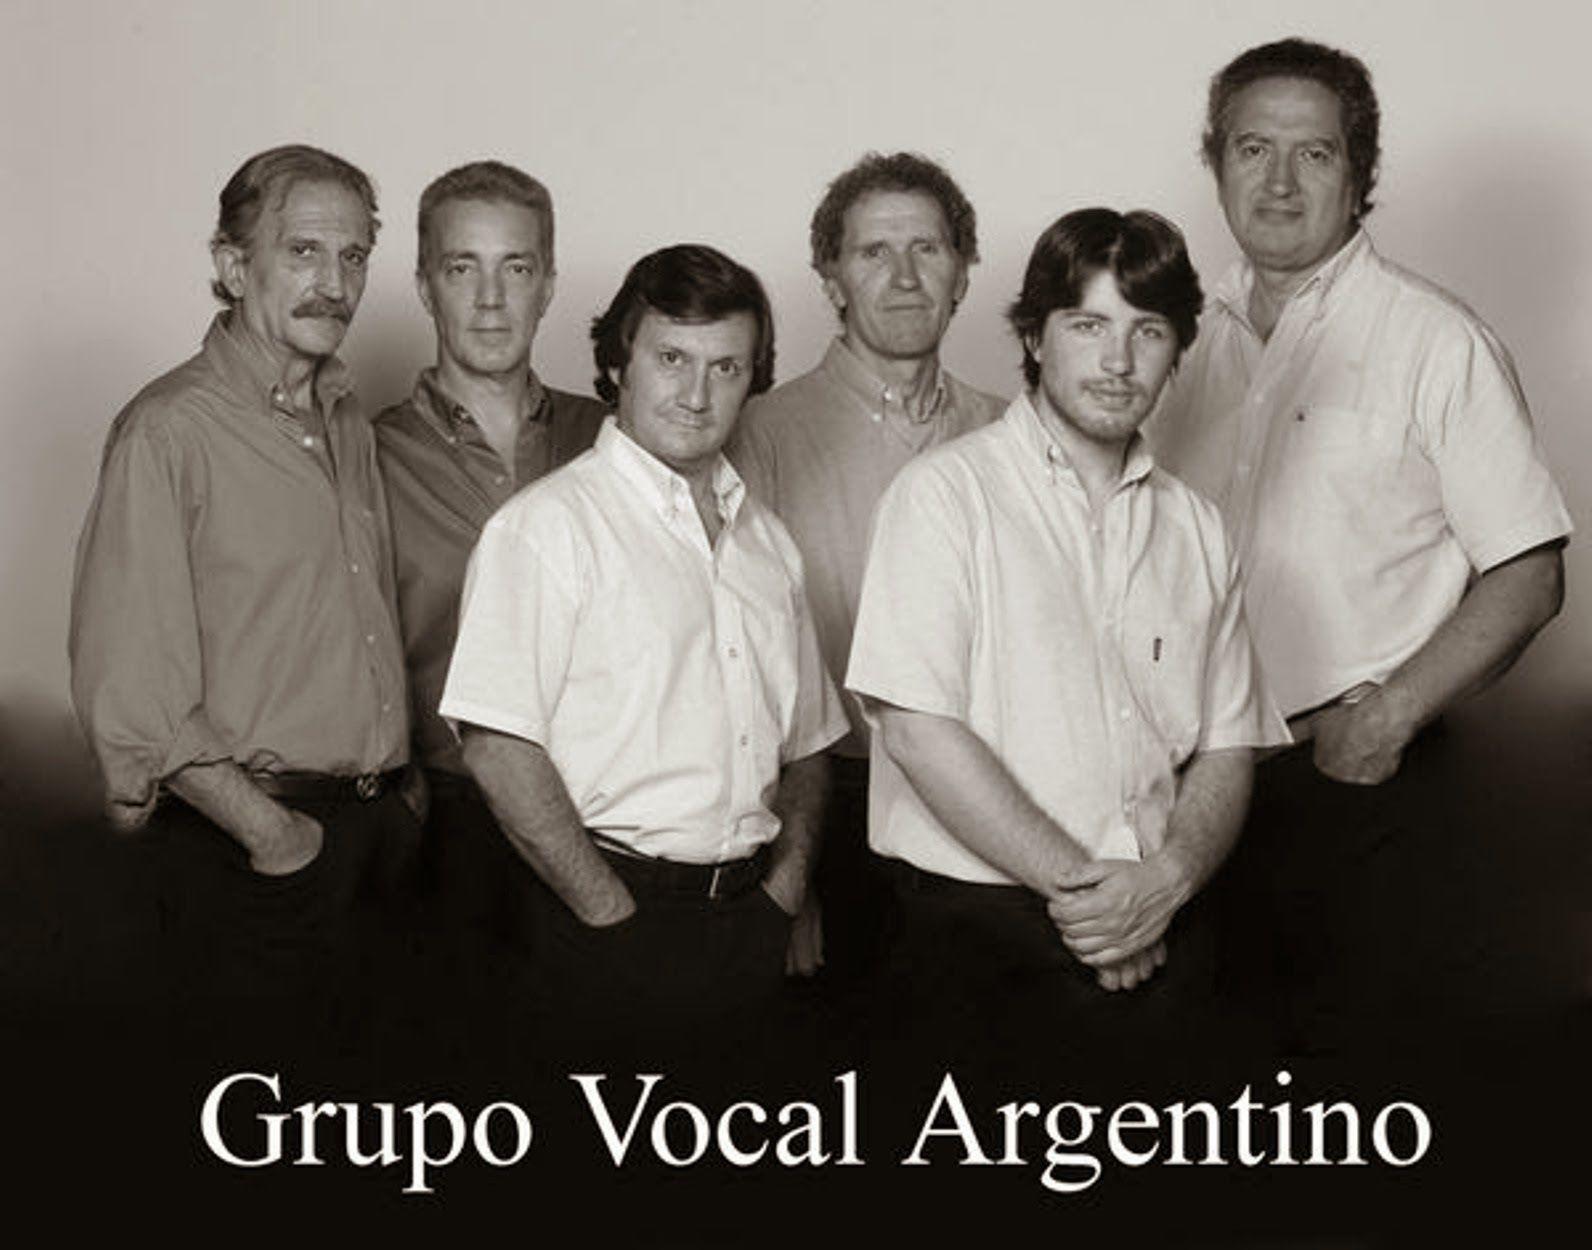 Invitan al concierto didaacutectico del Grupo Vocal Argentino